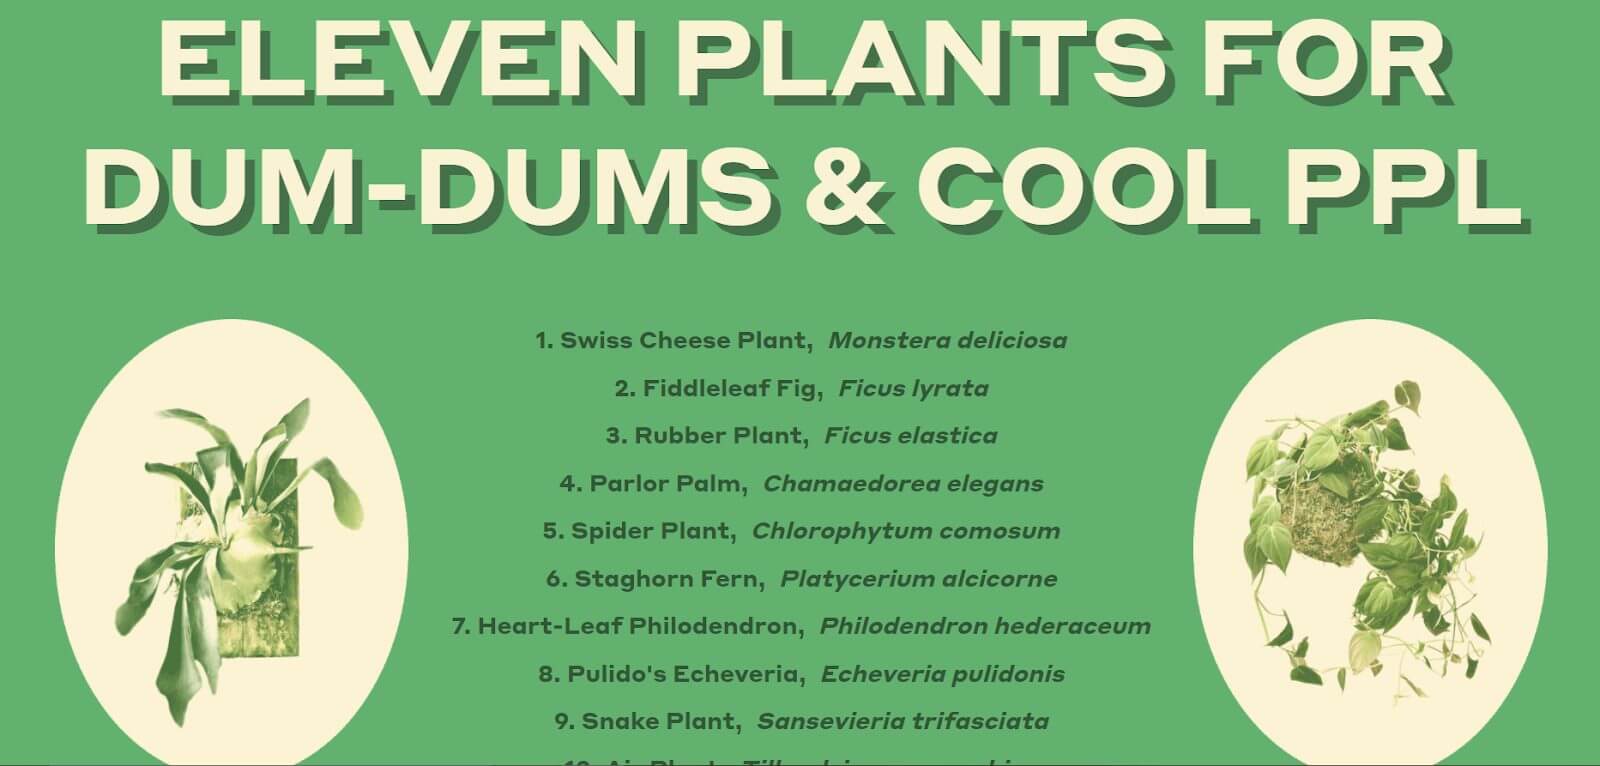 Eleven Plants for Dum-Dums & Cool Ppl